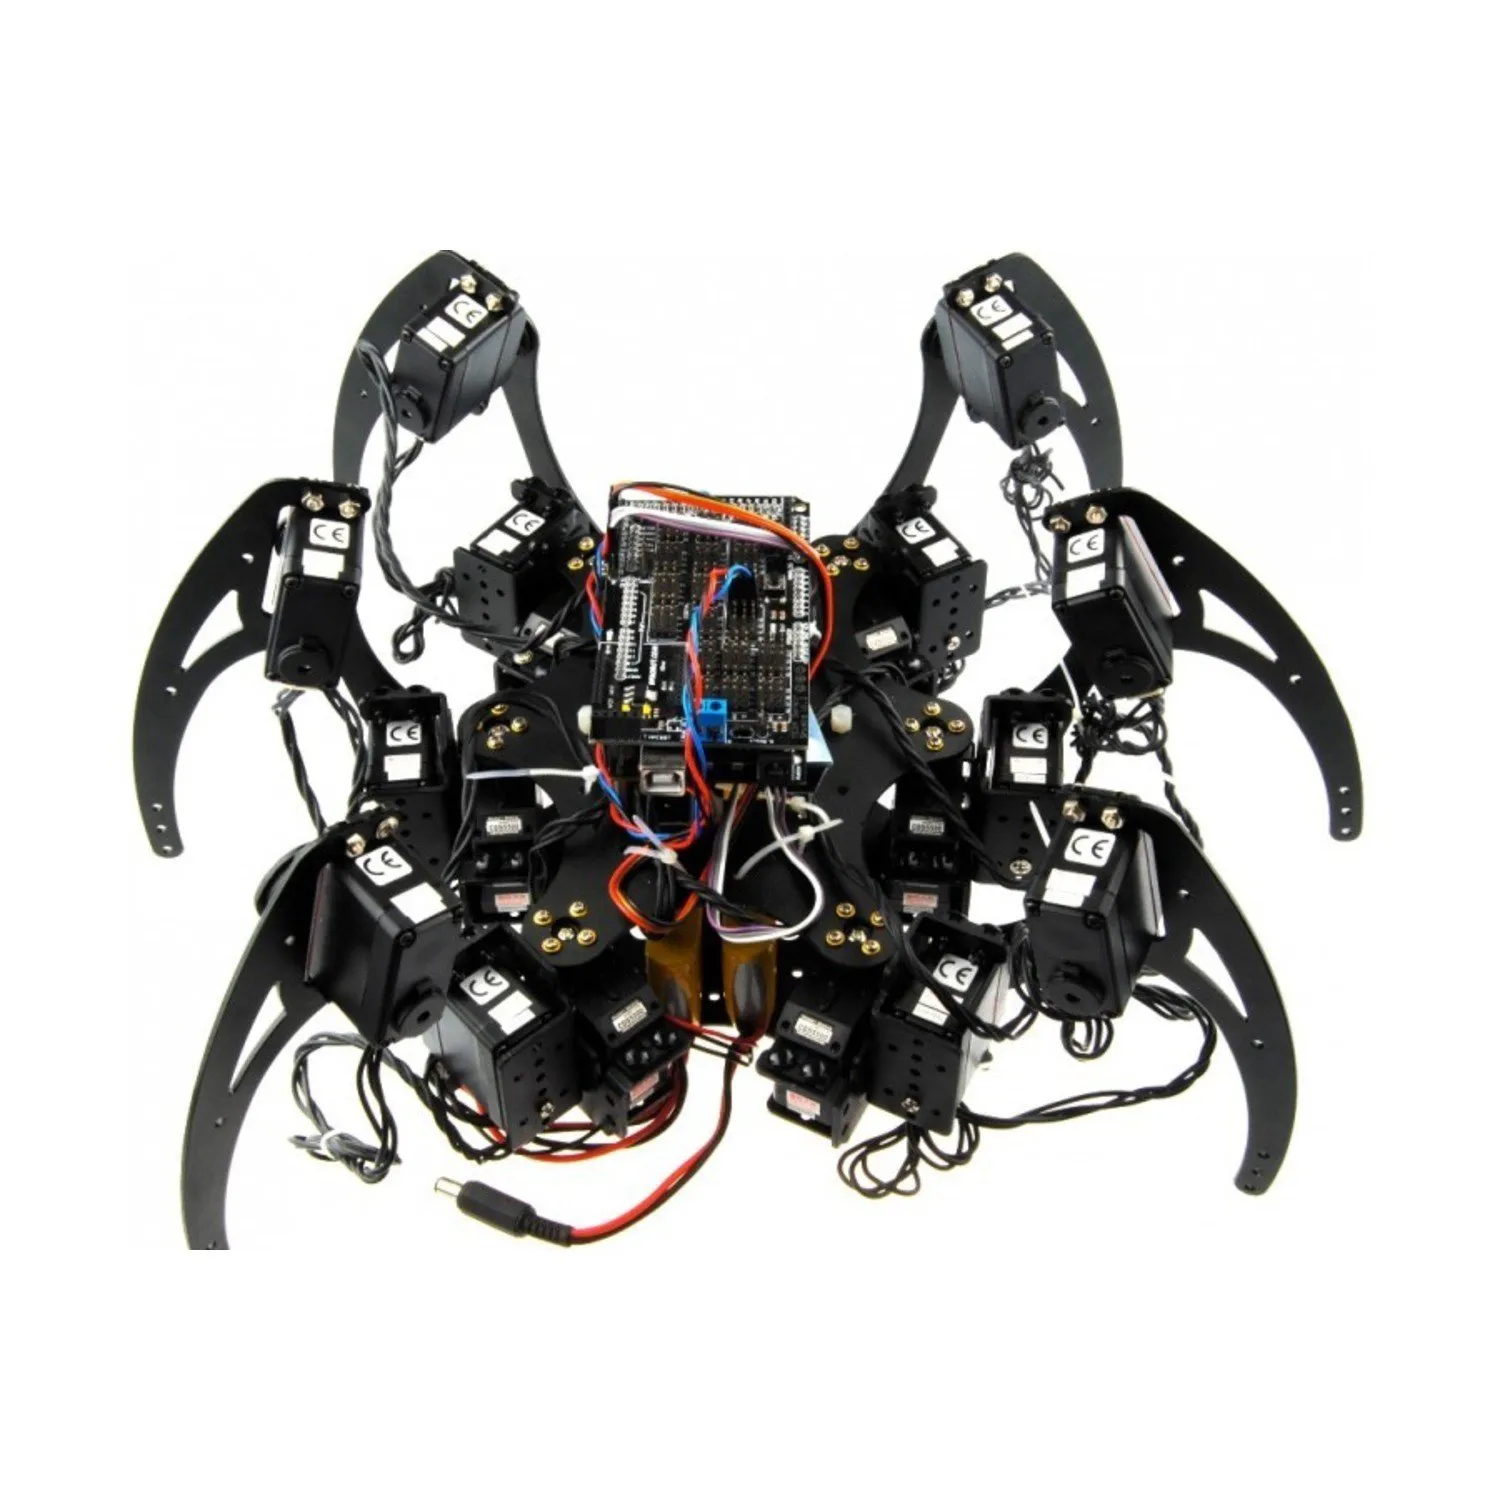 Photo of Hexapod Robot Kit